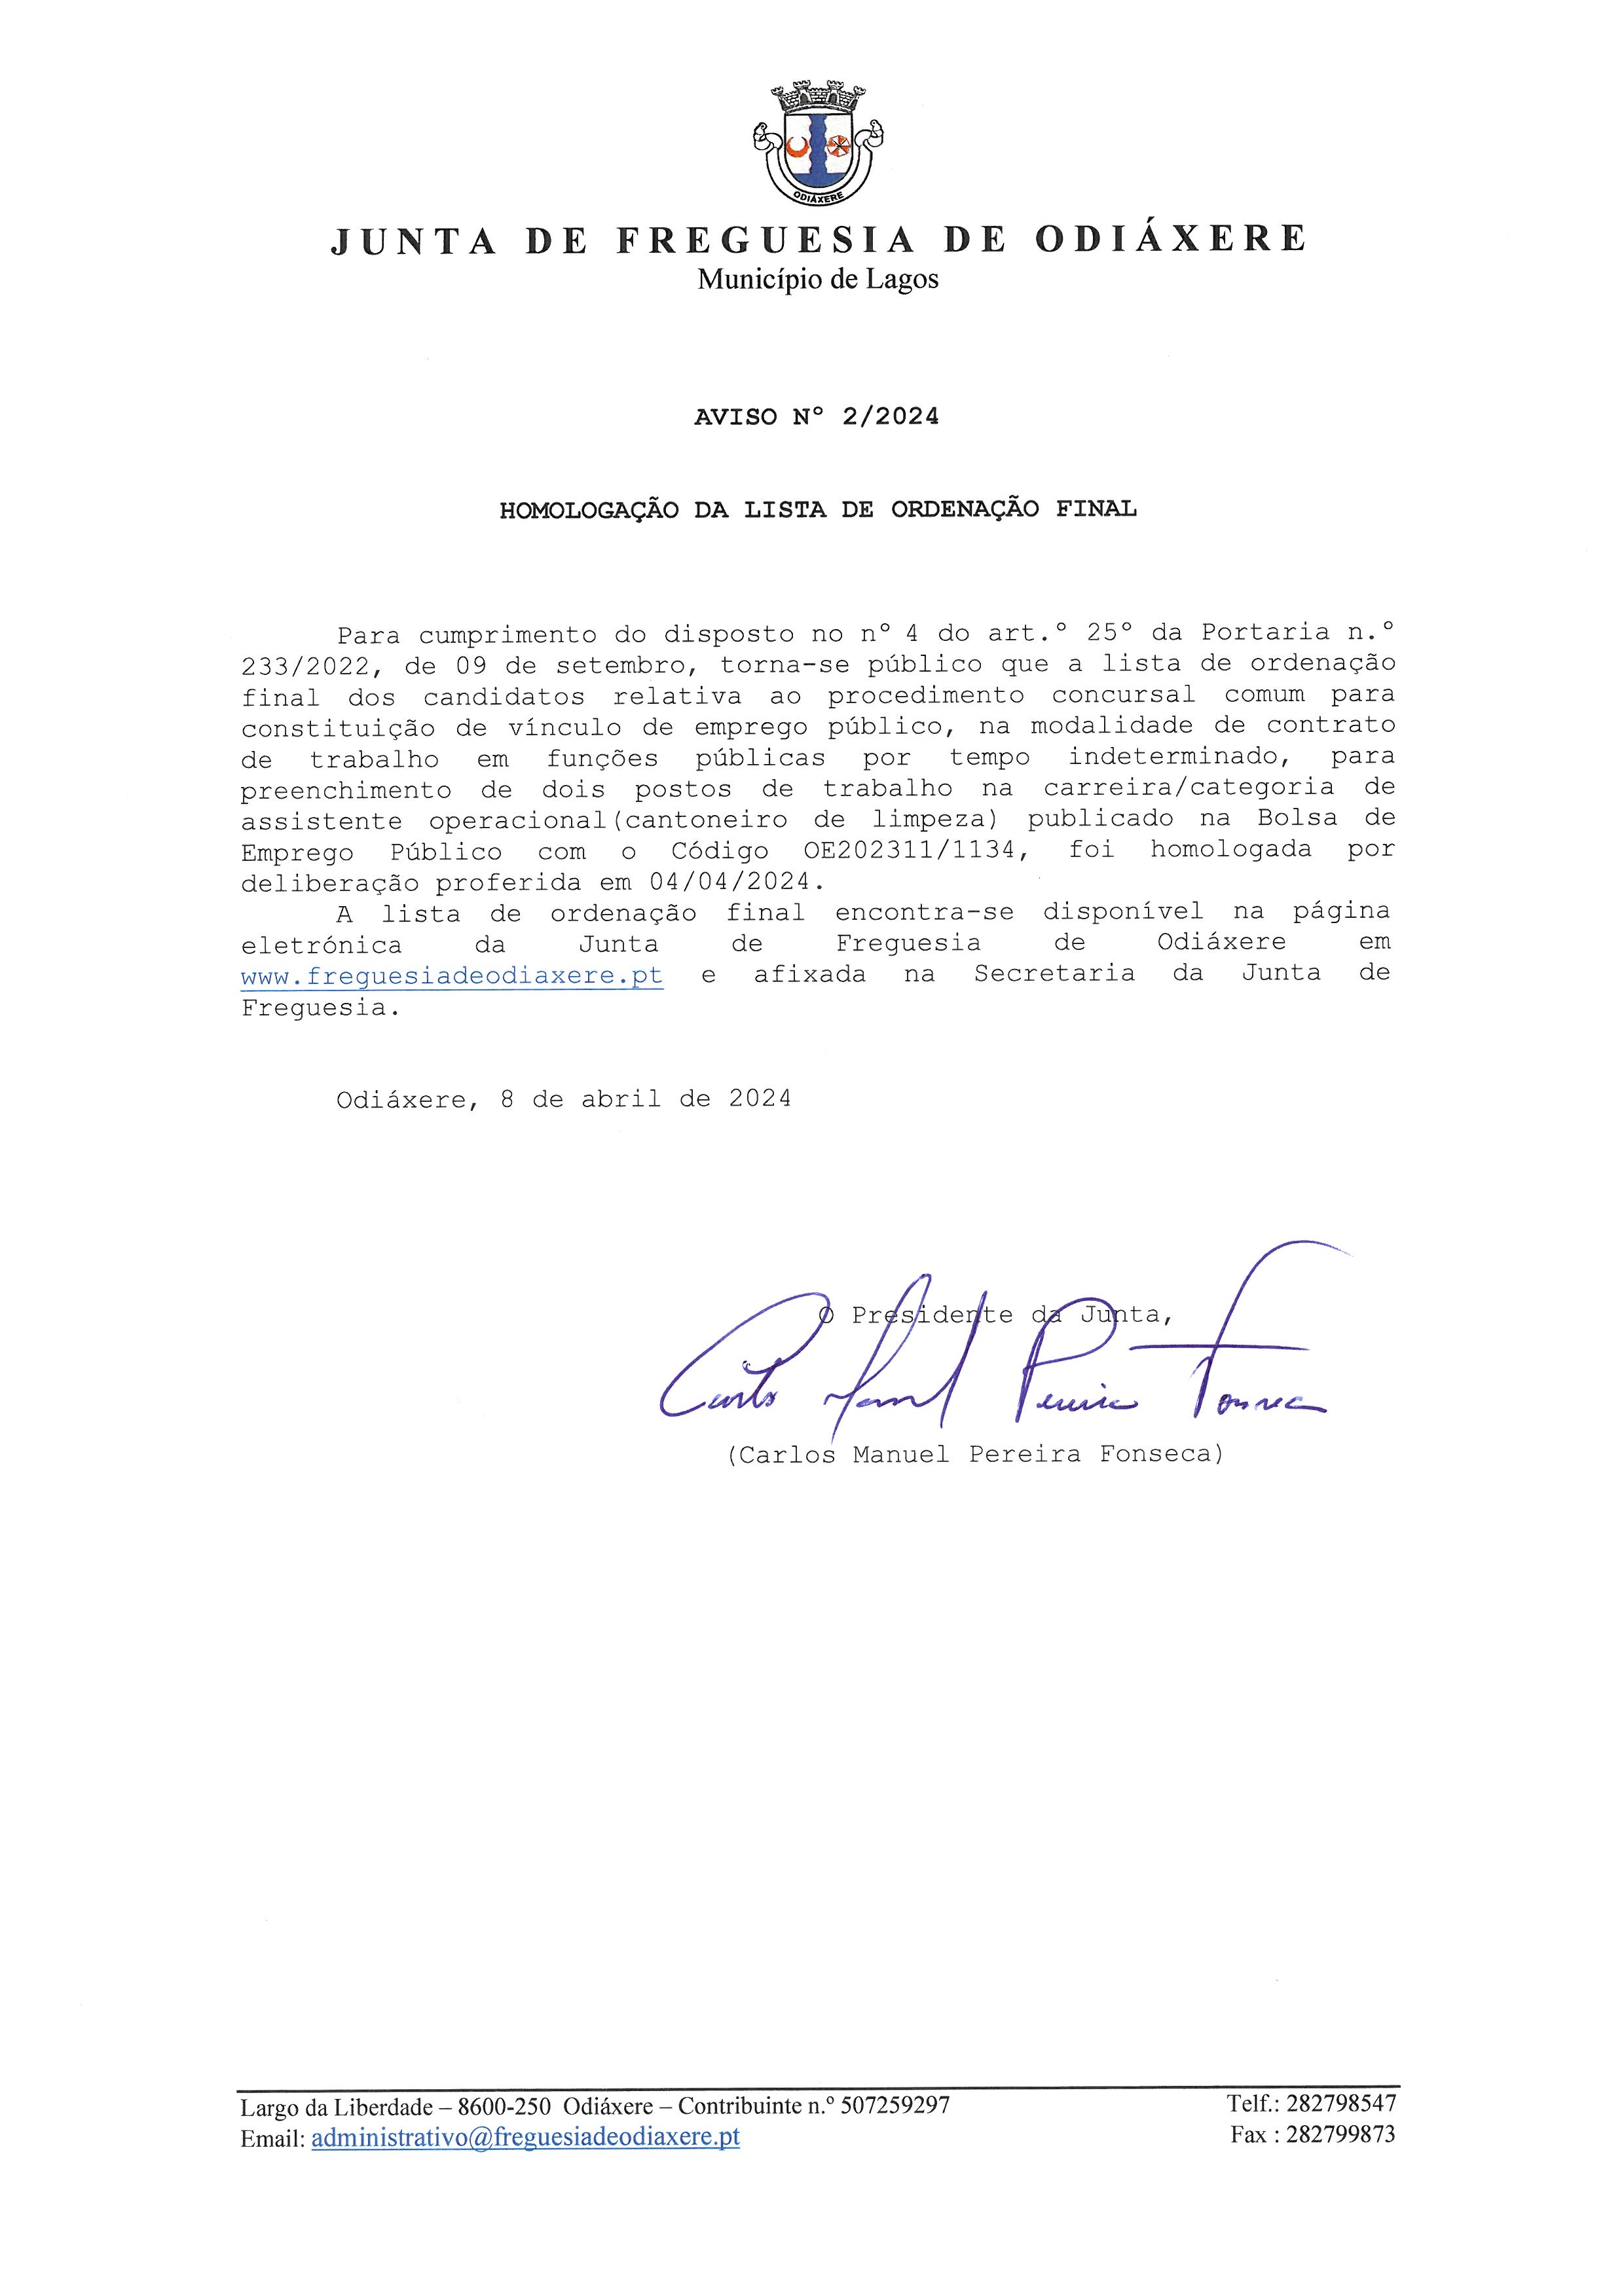 Notícia Aviso N.º 2/2024 - Homologação da Lista de Ordenação Final - Procedimento Concursal - Cantoneiro de limpeza